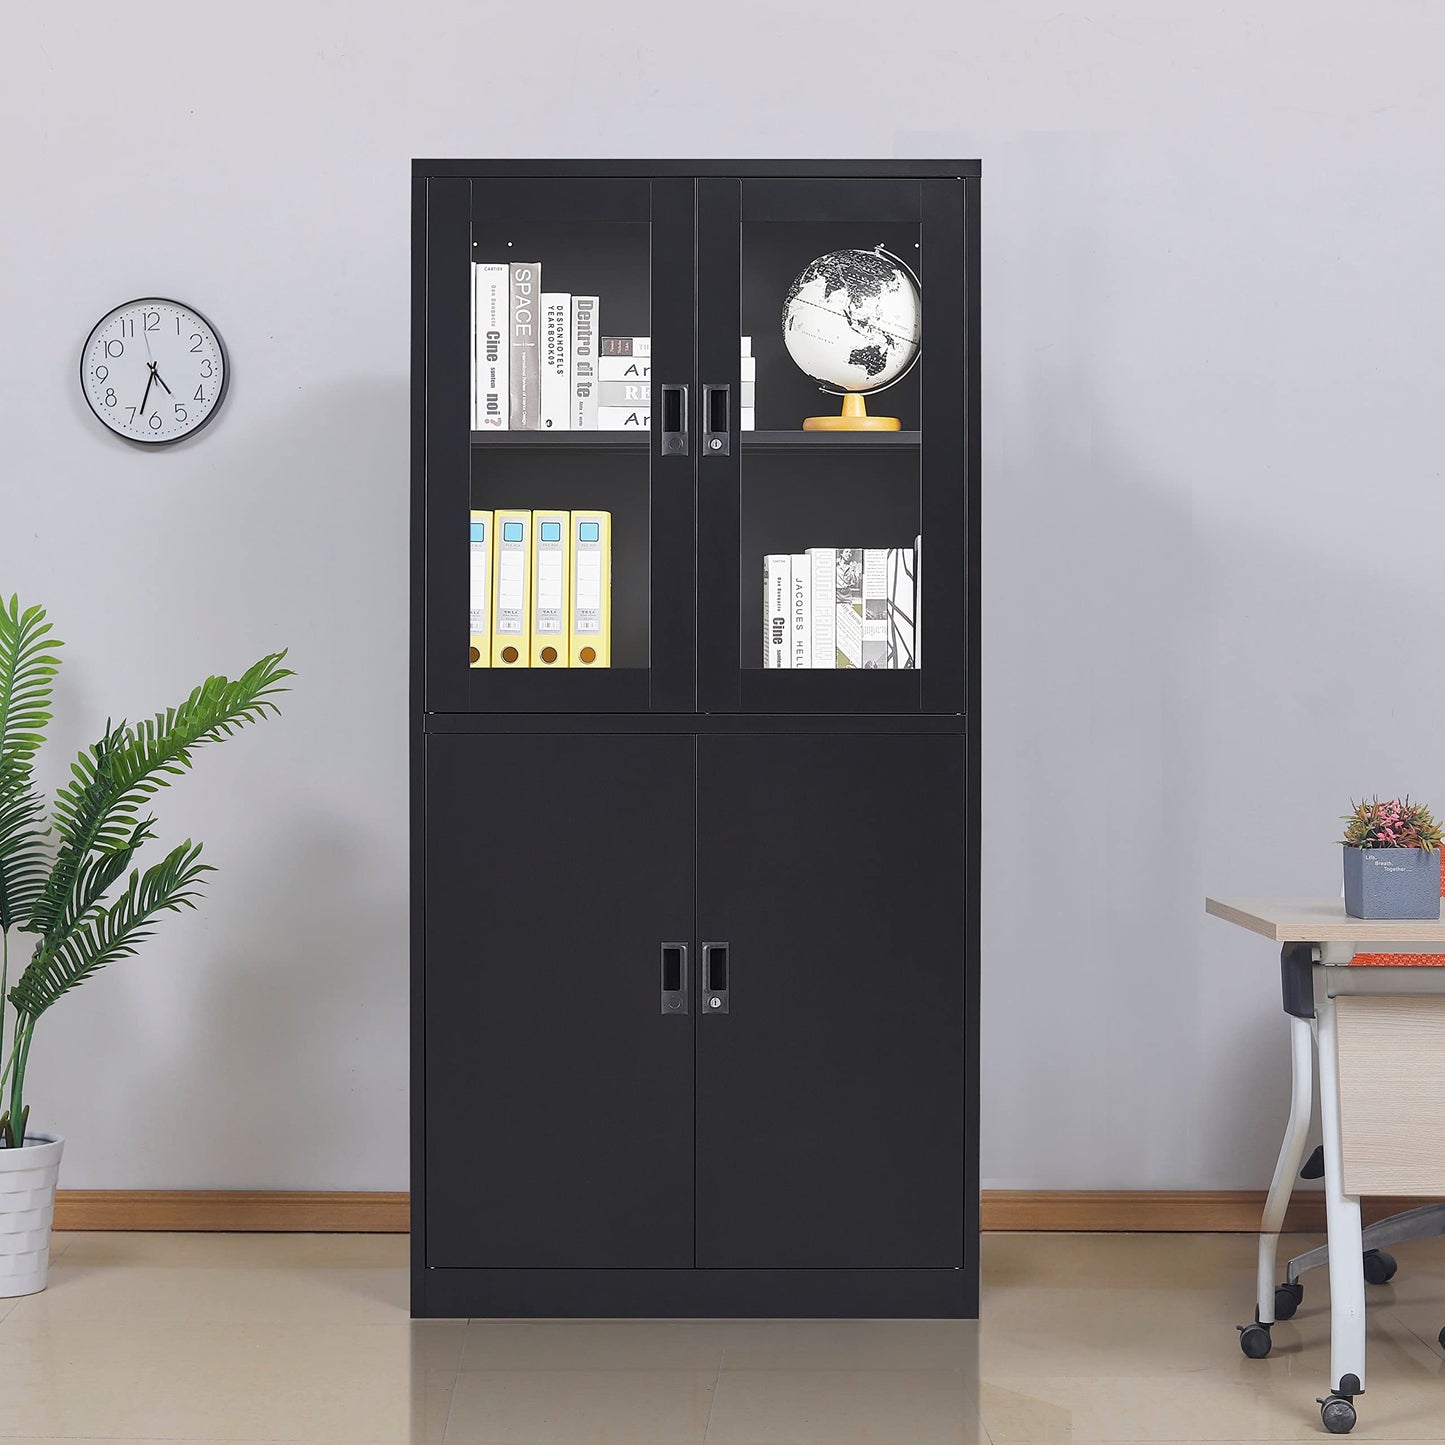 Anxxsu Black Metal Storage Cabinet with Glass Doors, 71" Locking Glass Door Cabinet with 2 Adjustable Shelves, Steel Storage Cabinet with 4 Doors for